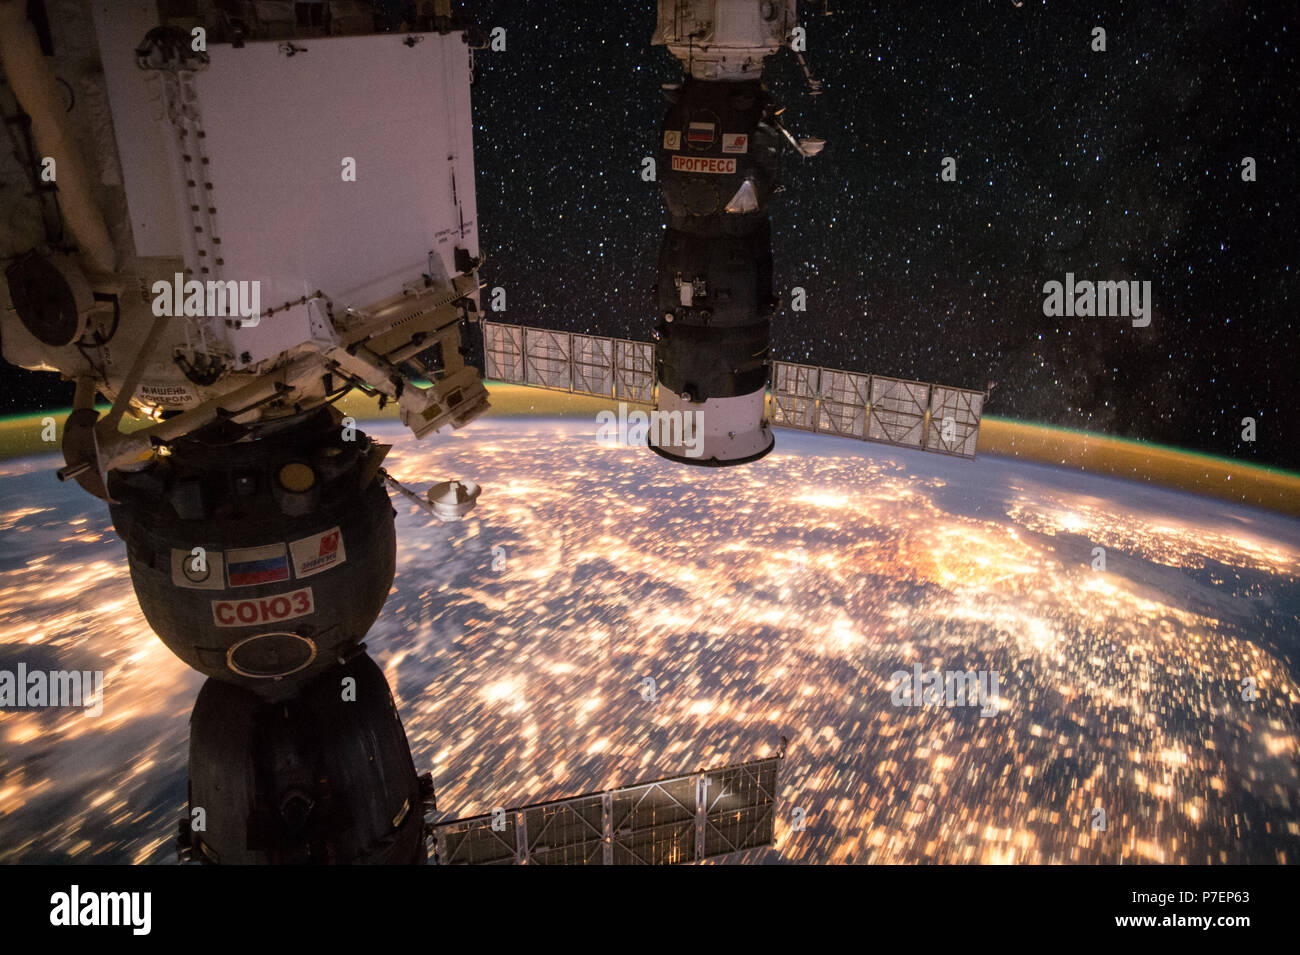 L'observation de la terre prise lors d'une nuit passez par l'expédition 49 à bord de l'équipage de la Station spatiale internationale (ISS). Amarré Soyouz et Progress visible. Banque D'Images